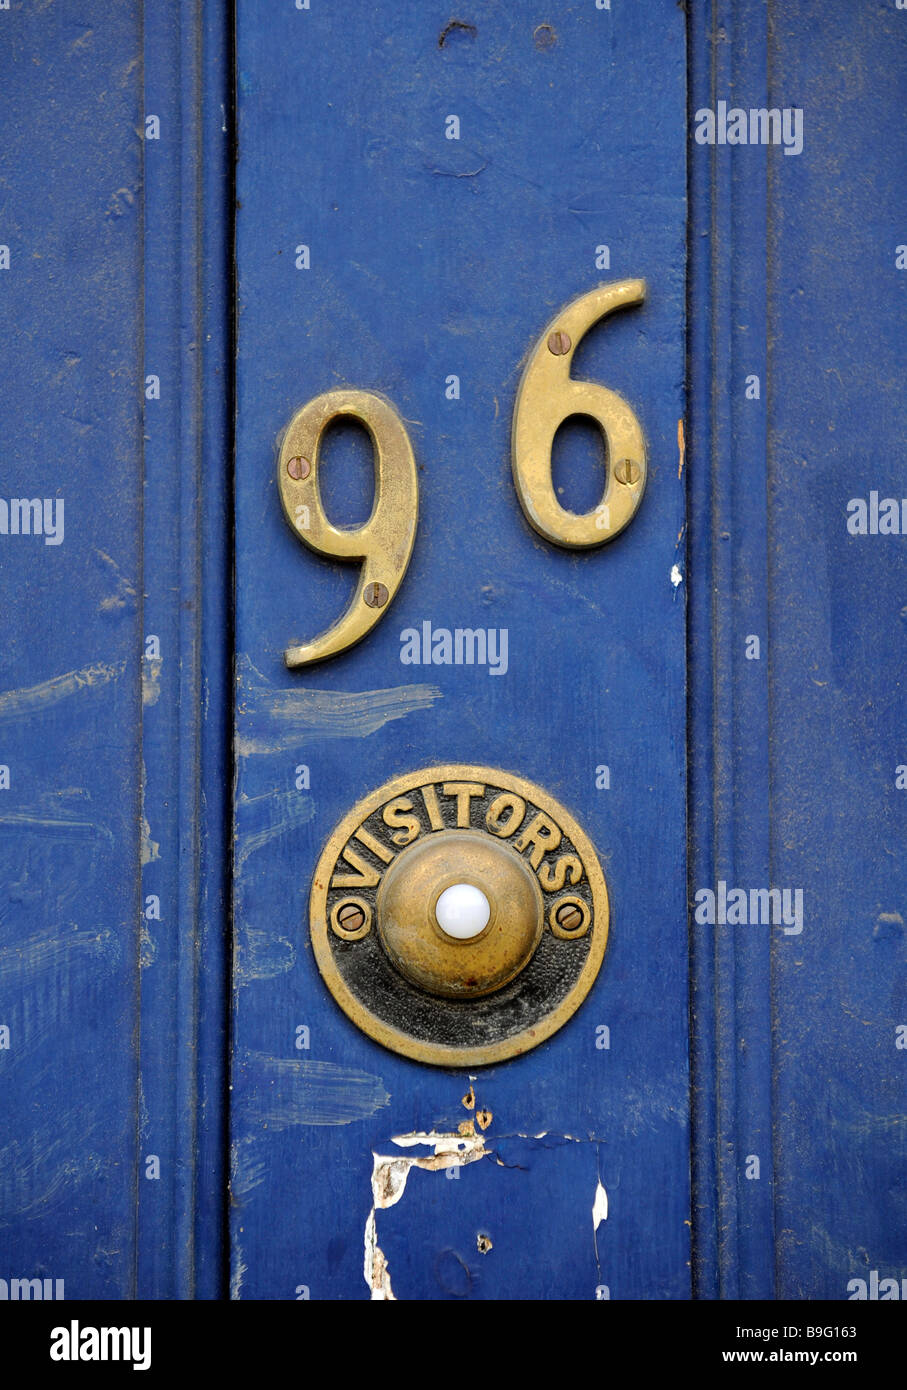 Die Hausnummer 96 und ein Besucherzentrum Tür Klingeltaste stehen auf der gemalten blauen Tür von einem London Immobilien, Haus, Wohnung Stockfoto